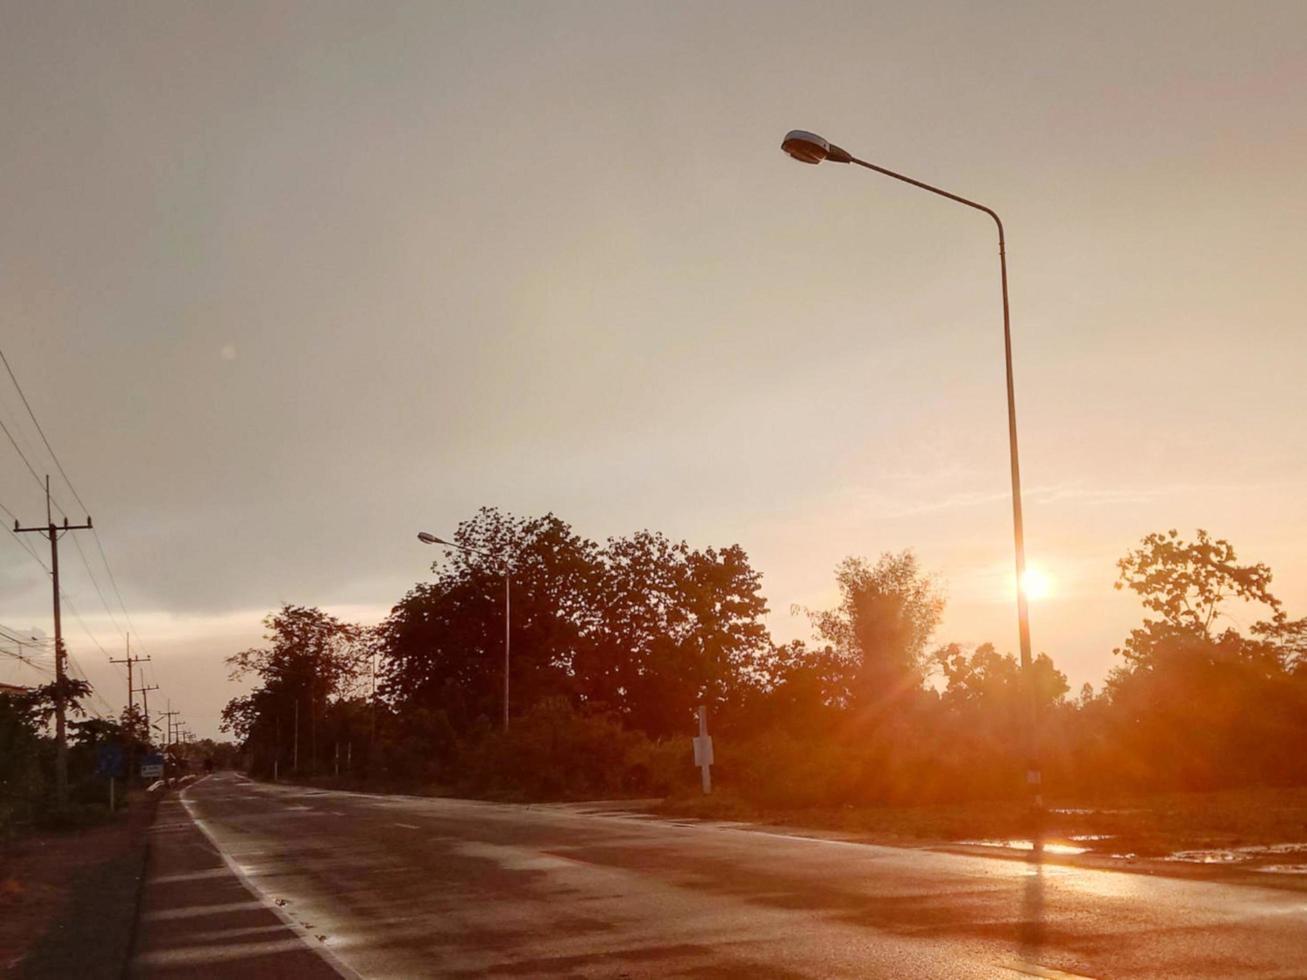 estrada pavimentada de asfalto molhada com chuva na beira da estrada ao lado da árvore do mato, silhueta pôr do sol brilha cor laranja brilhante foto